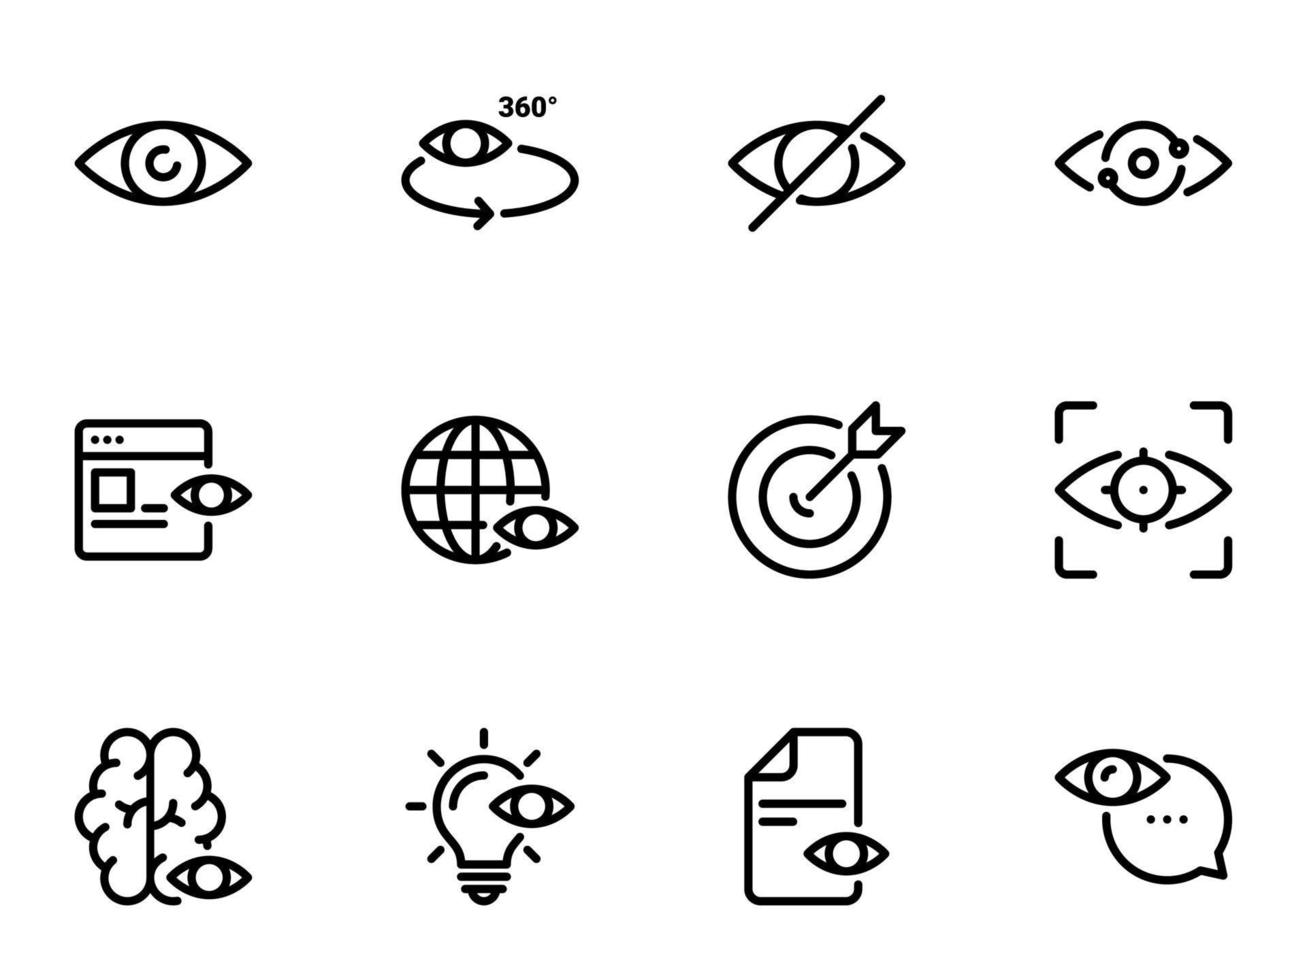 ensemble d'icônes vectorielles noires, isolées sur fond blanc. illustration sur un thème oeil vecteur